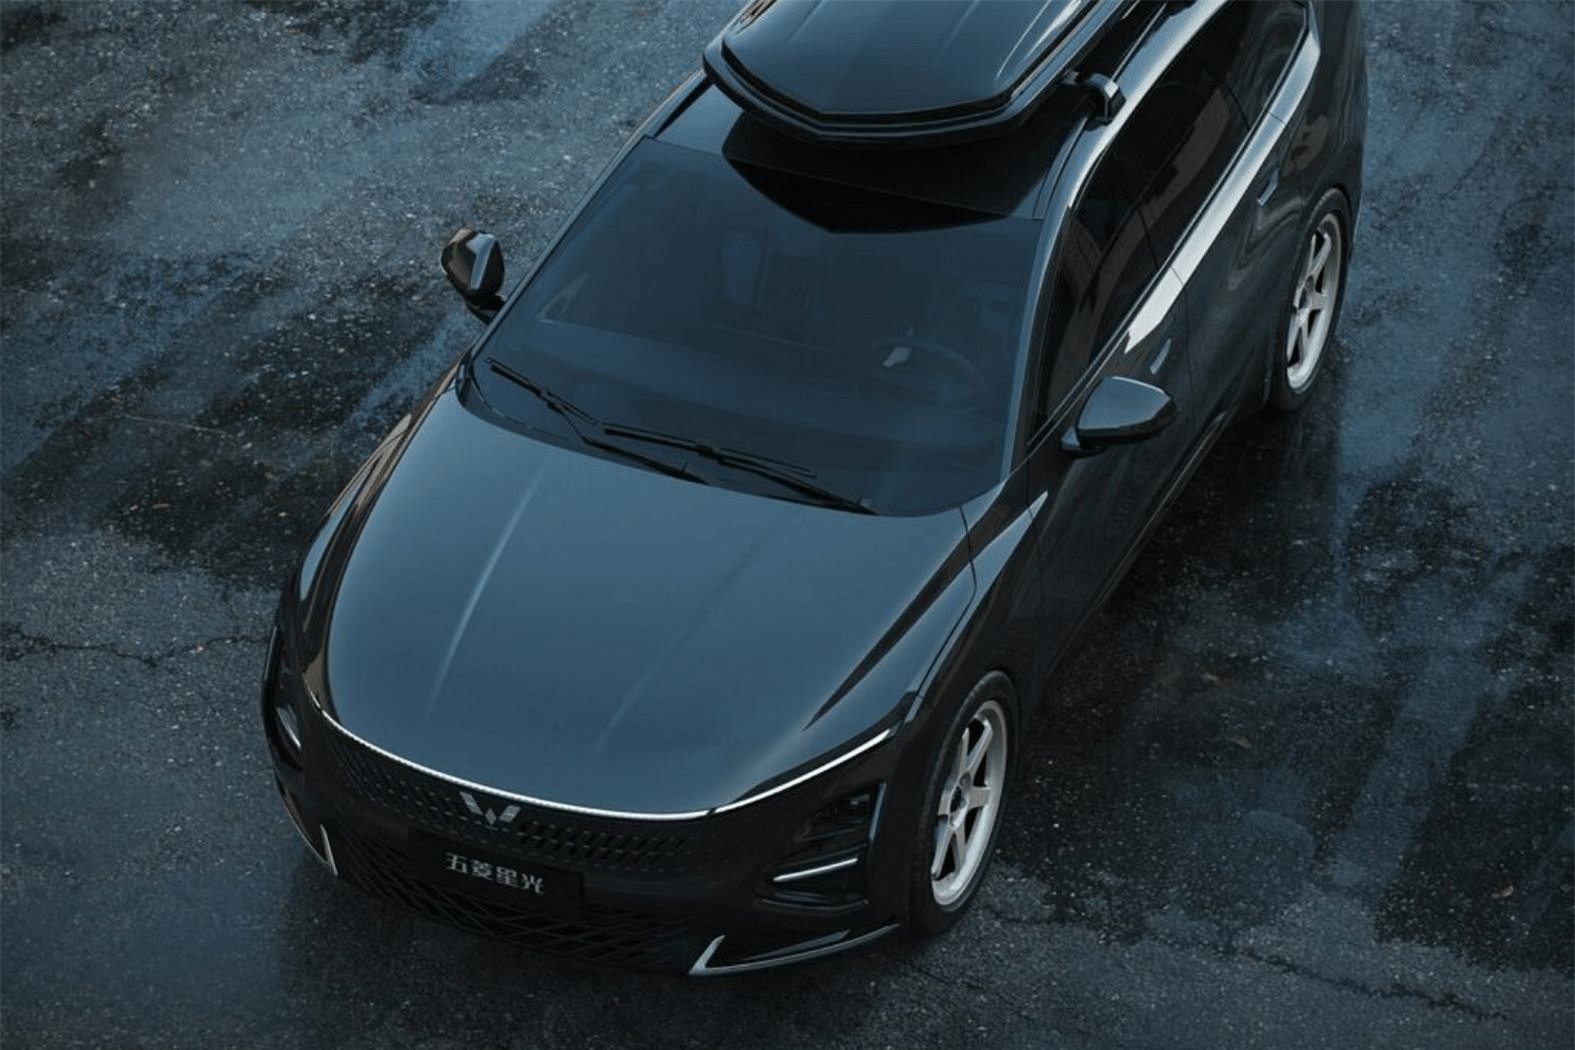 Ra mắt mẫu sedan cực ‘xịn’ giá 384 triệu đồng: Thiết kế ngang Camry, sẵn sàng thay thế Hyundai Grand i10?- Ảnh 1.